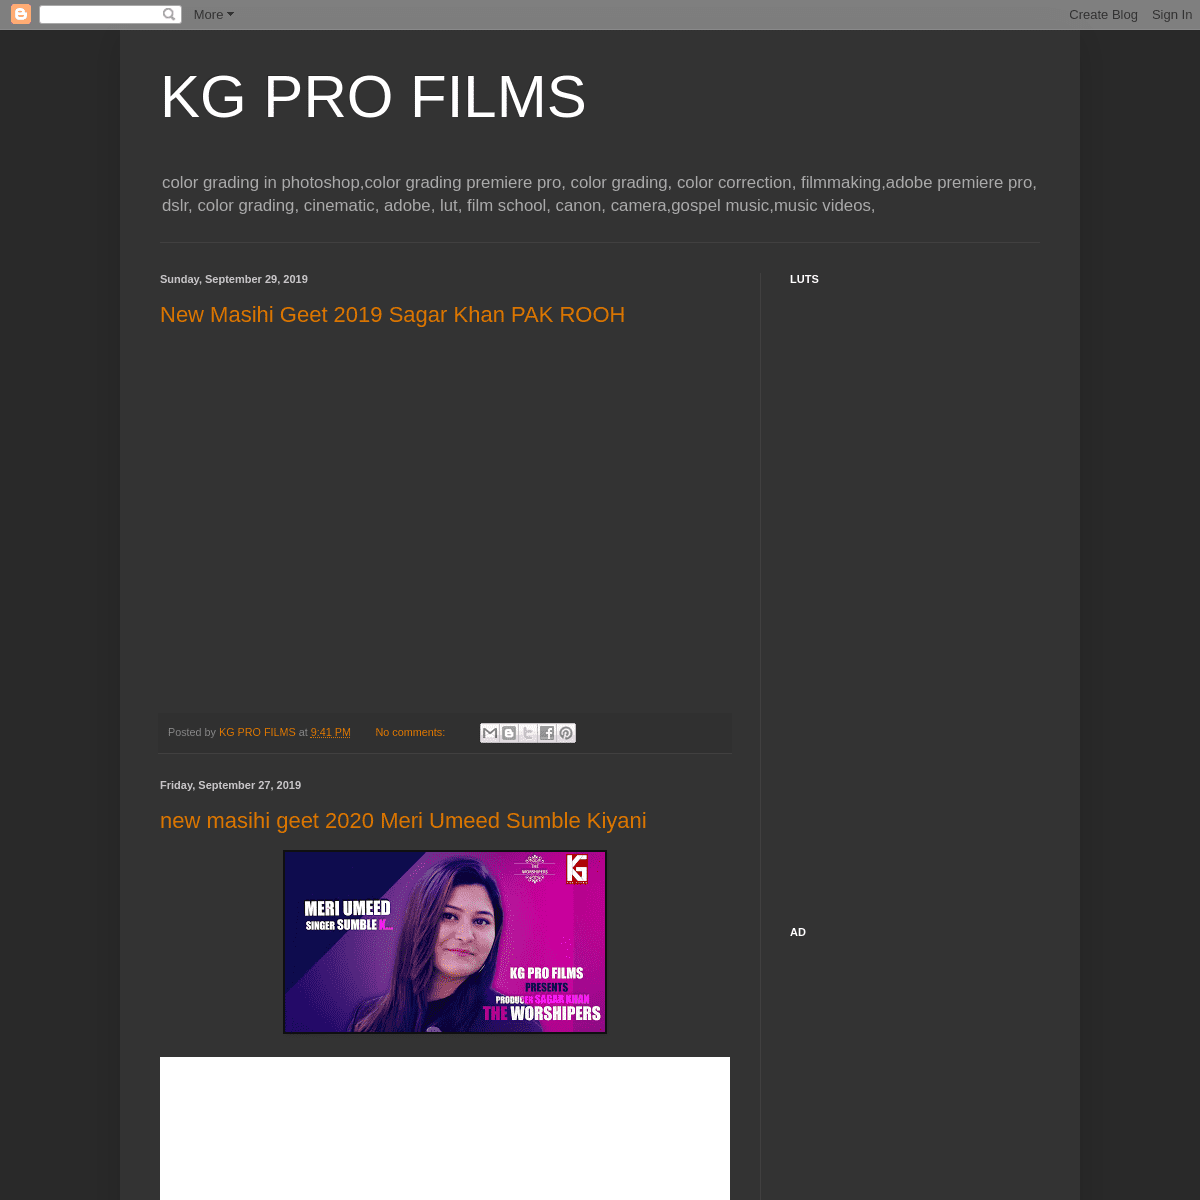 A complete backup of kgfilms.blogspot.com